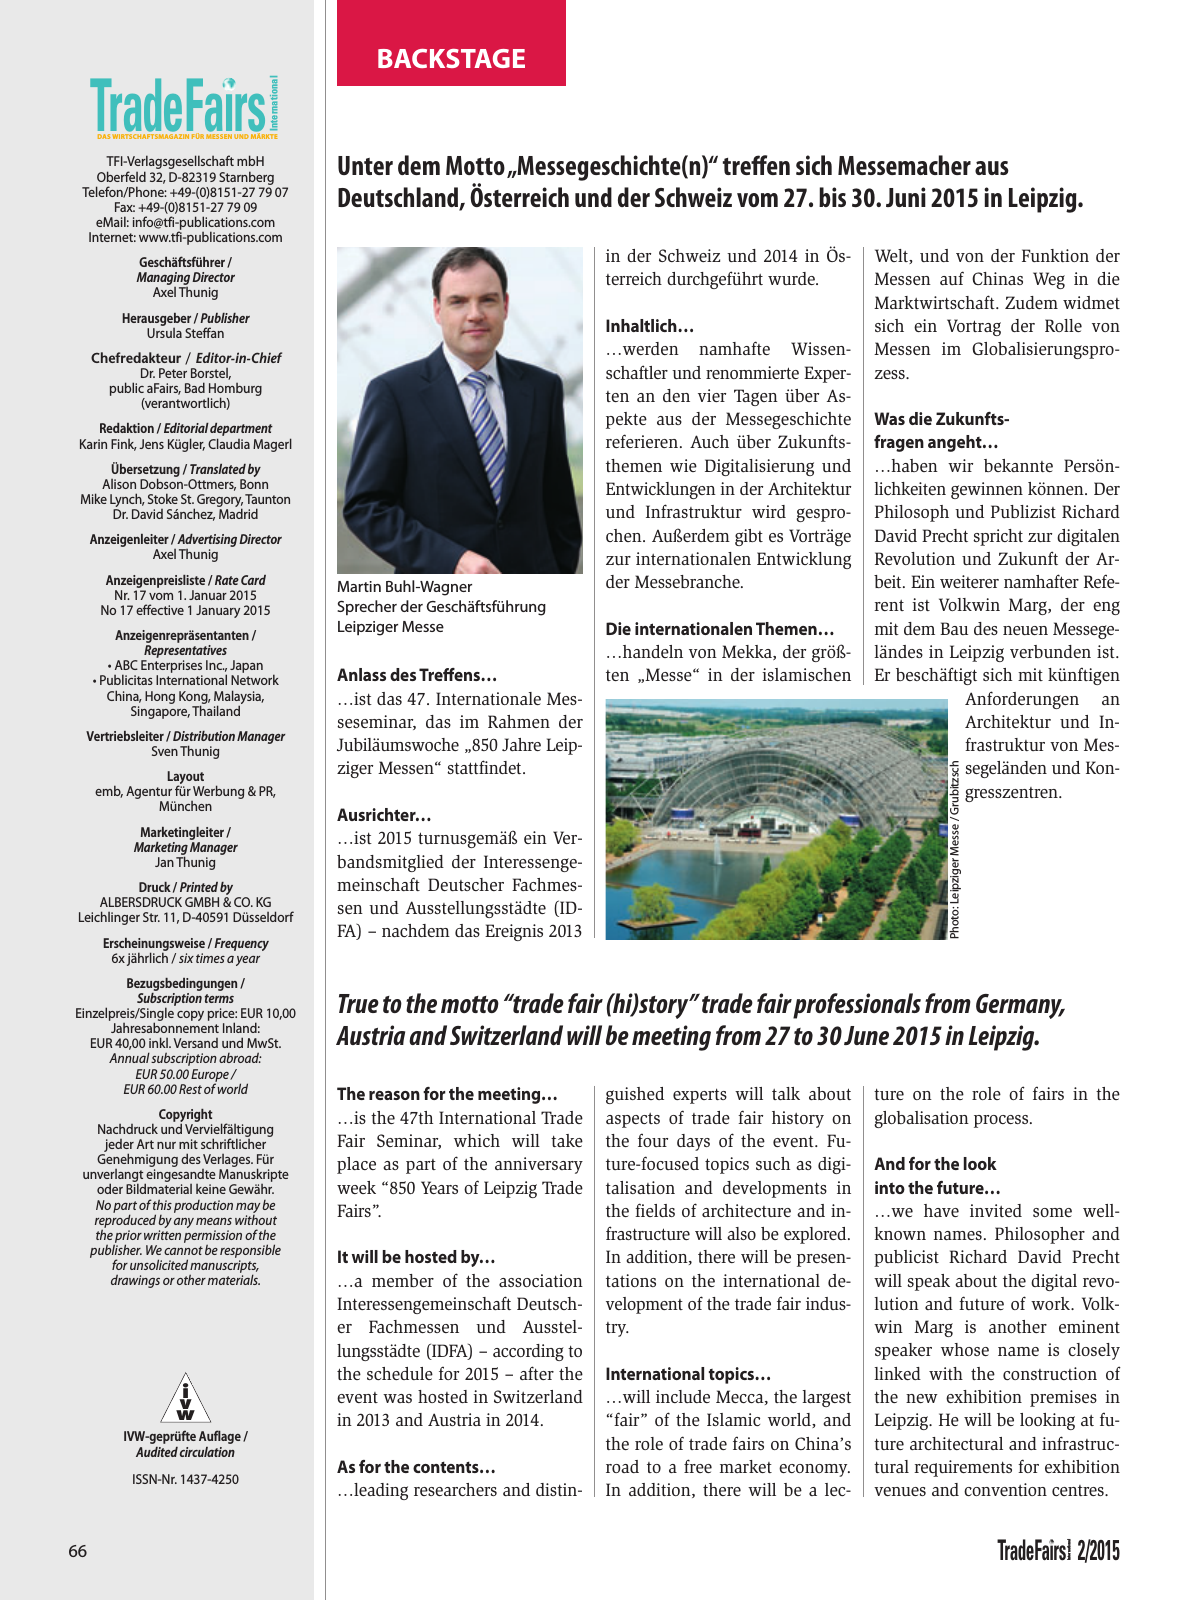 Vorschau TFI Trade-Fairs-International 02/2015 Seite 66